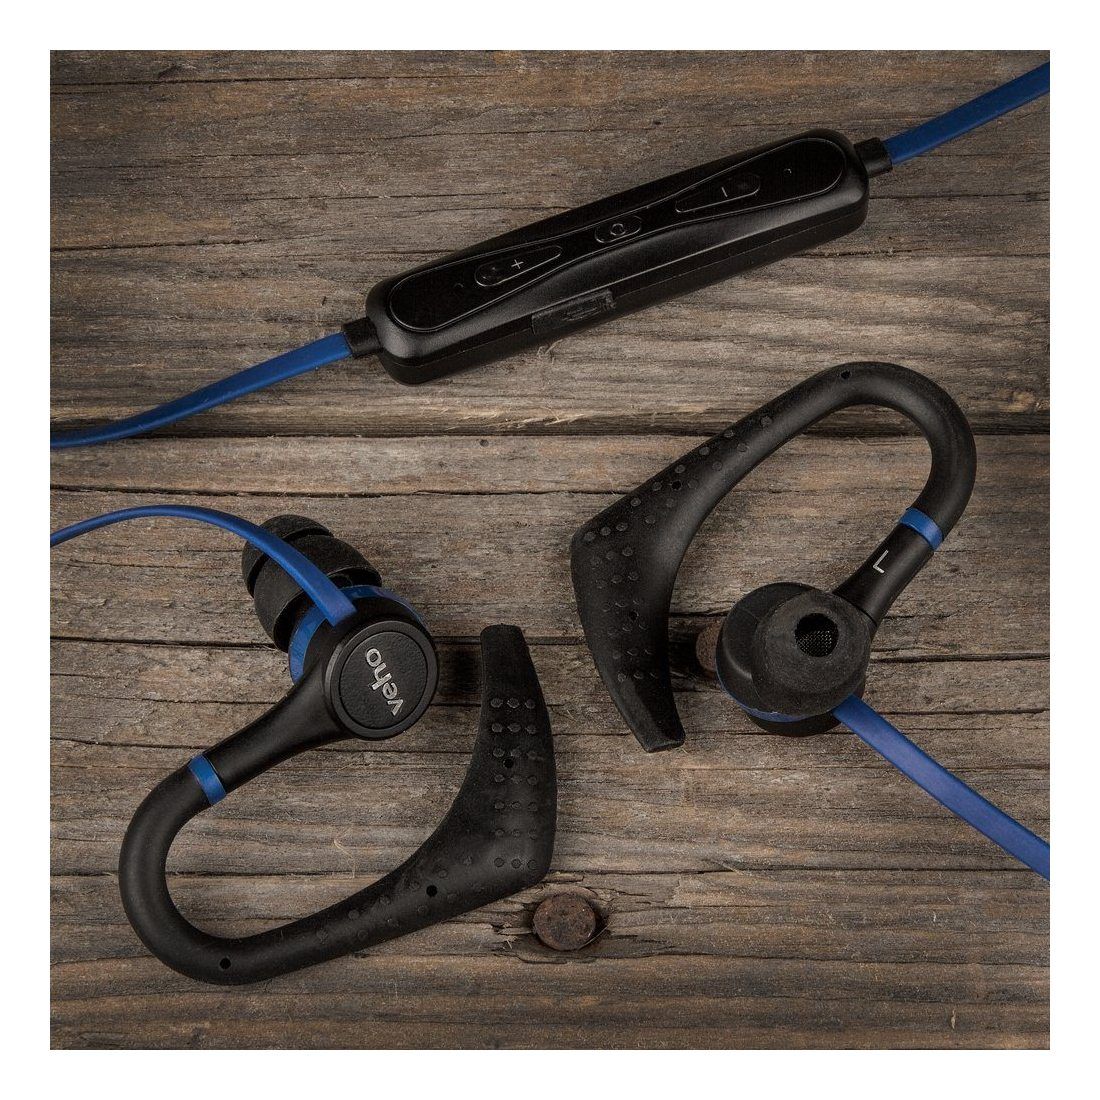 Veho VEP-007-ZB1 Ecouteurs intra-auriculaires Sport sans fil Bluetooth Noir/Bleu